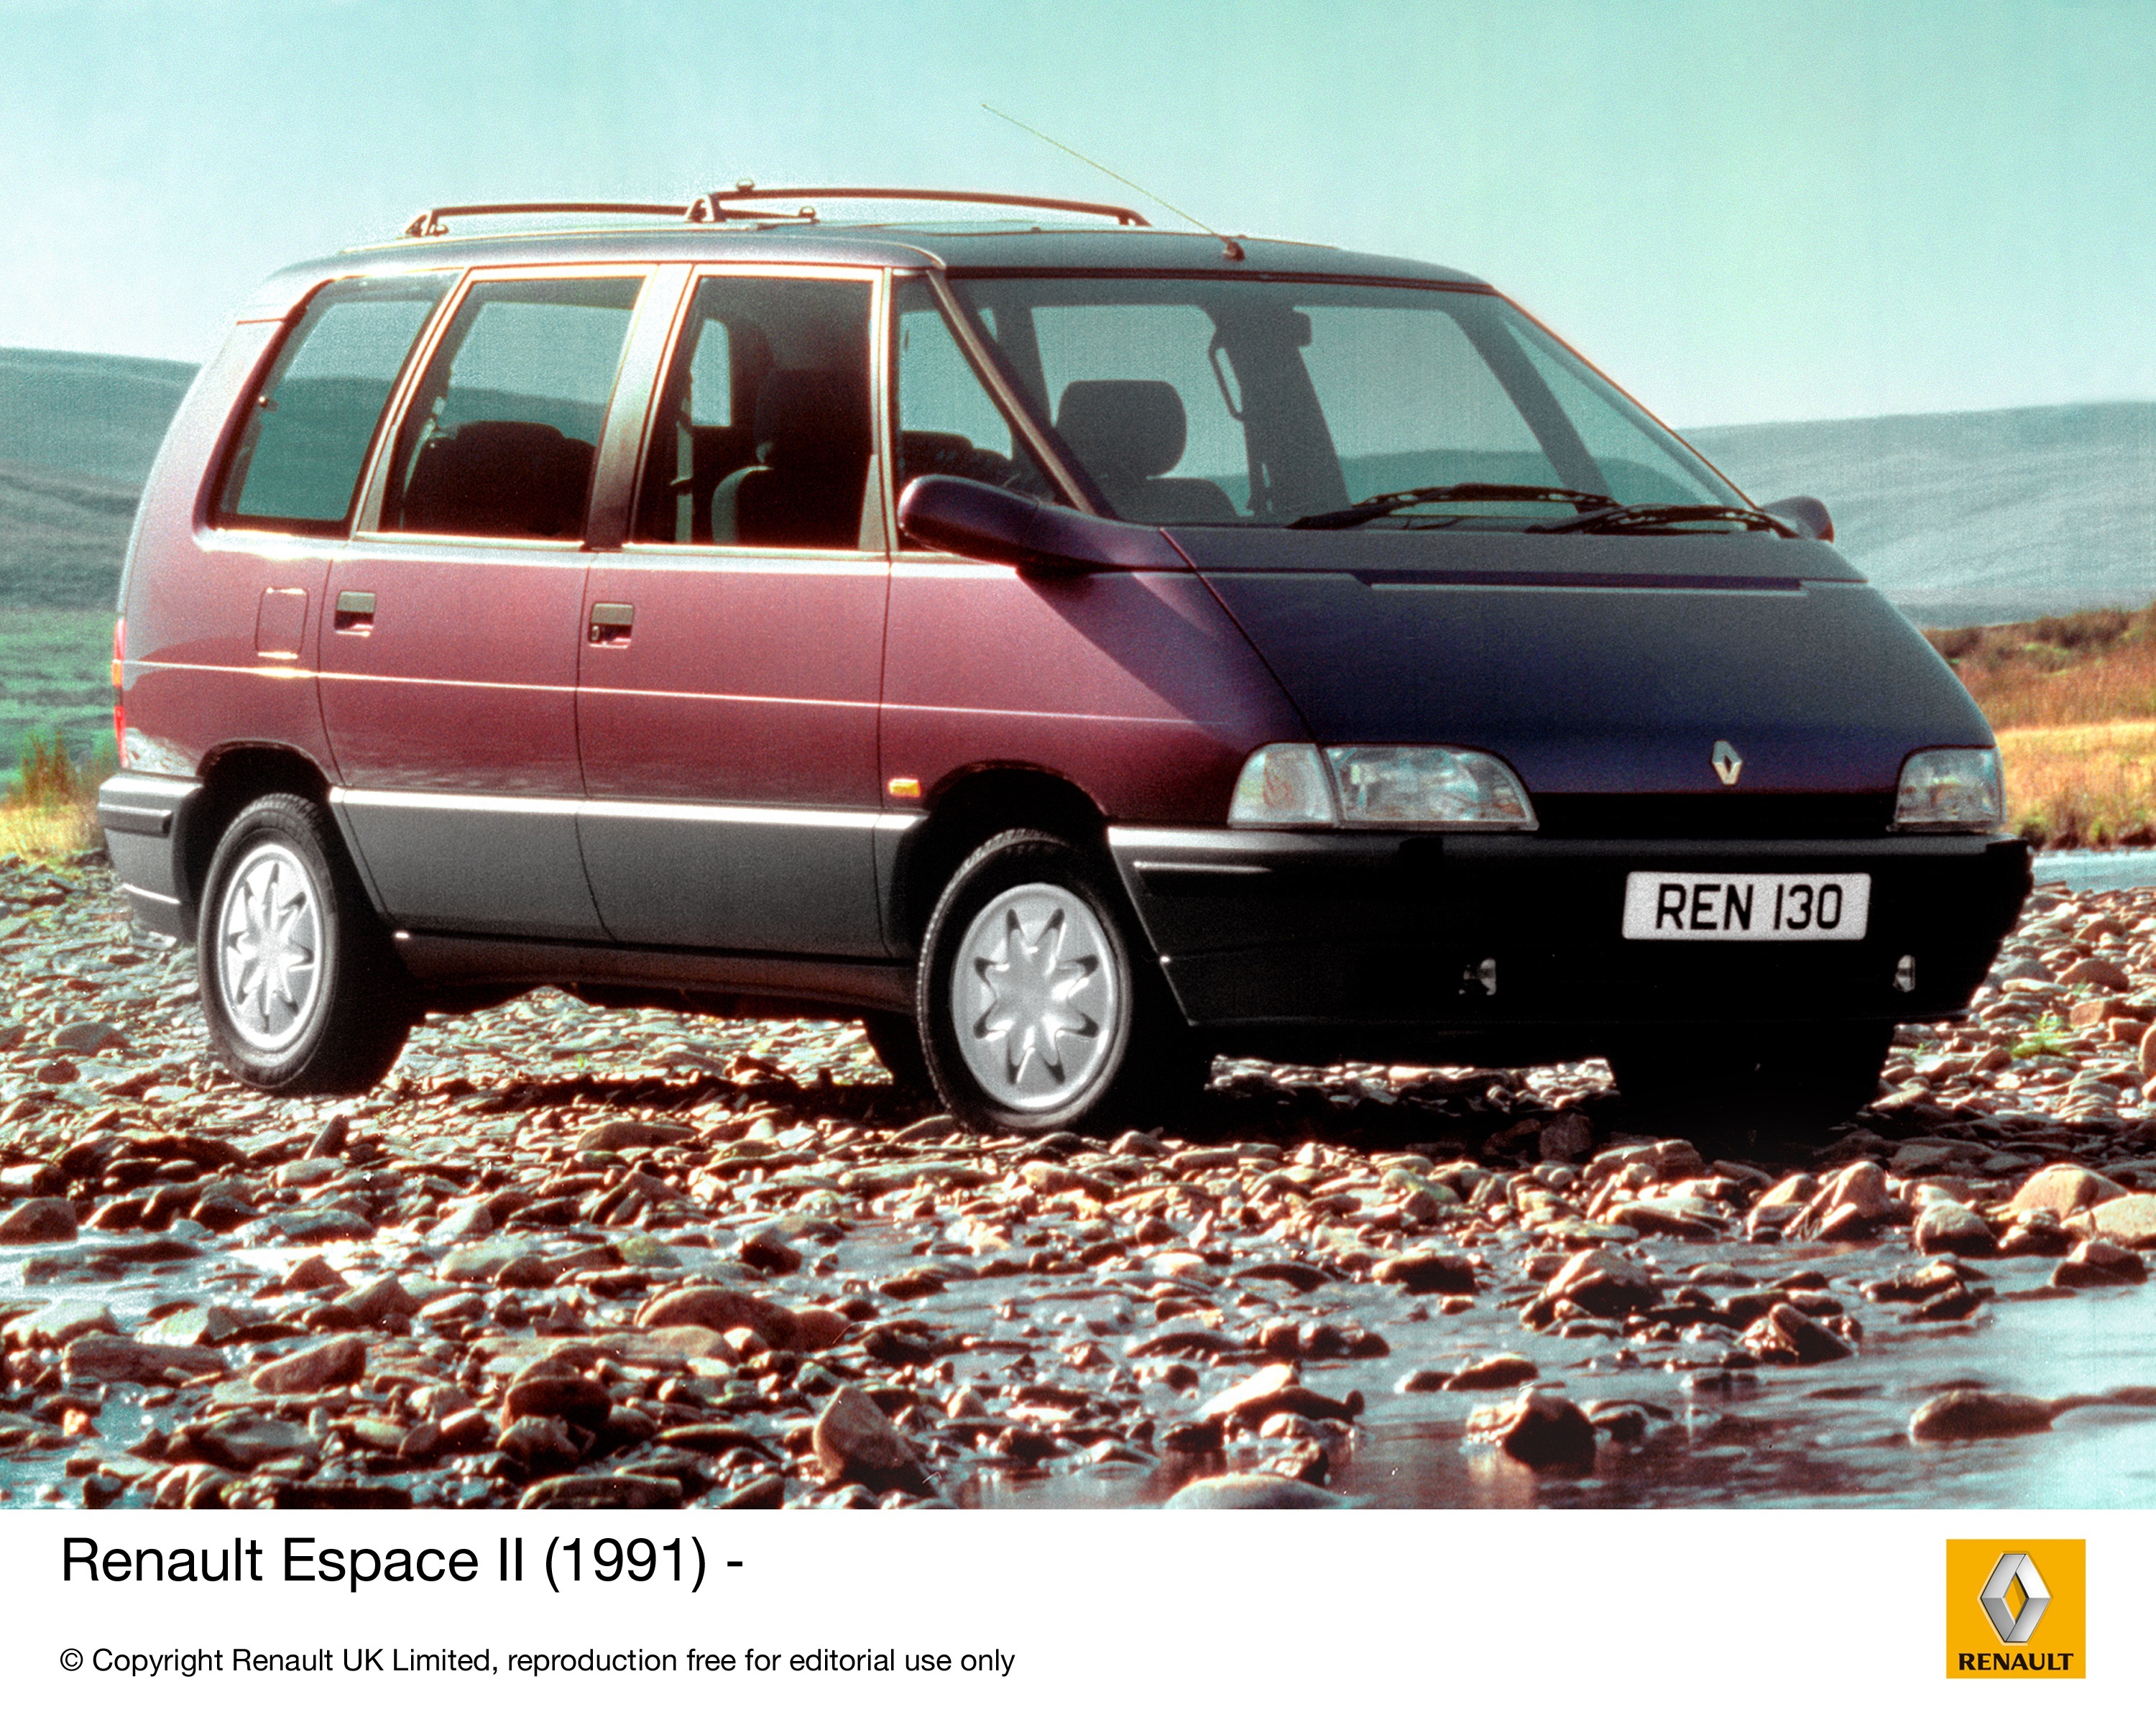 Renault минивэн. Рено Эспейс 2 поколения. Рено минивэн Эспейс 2. Renault Espace 1984. Renault Espace 1991.